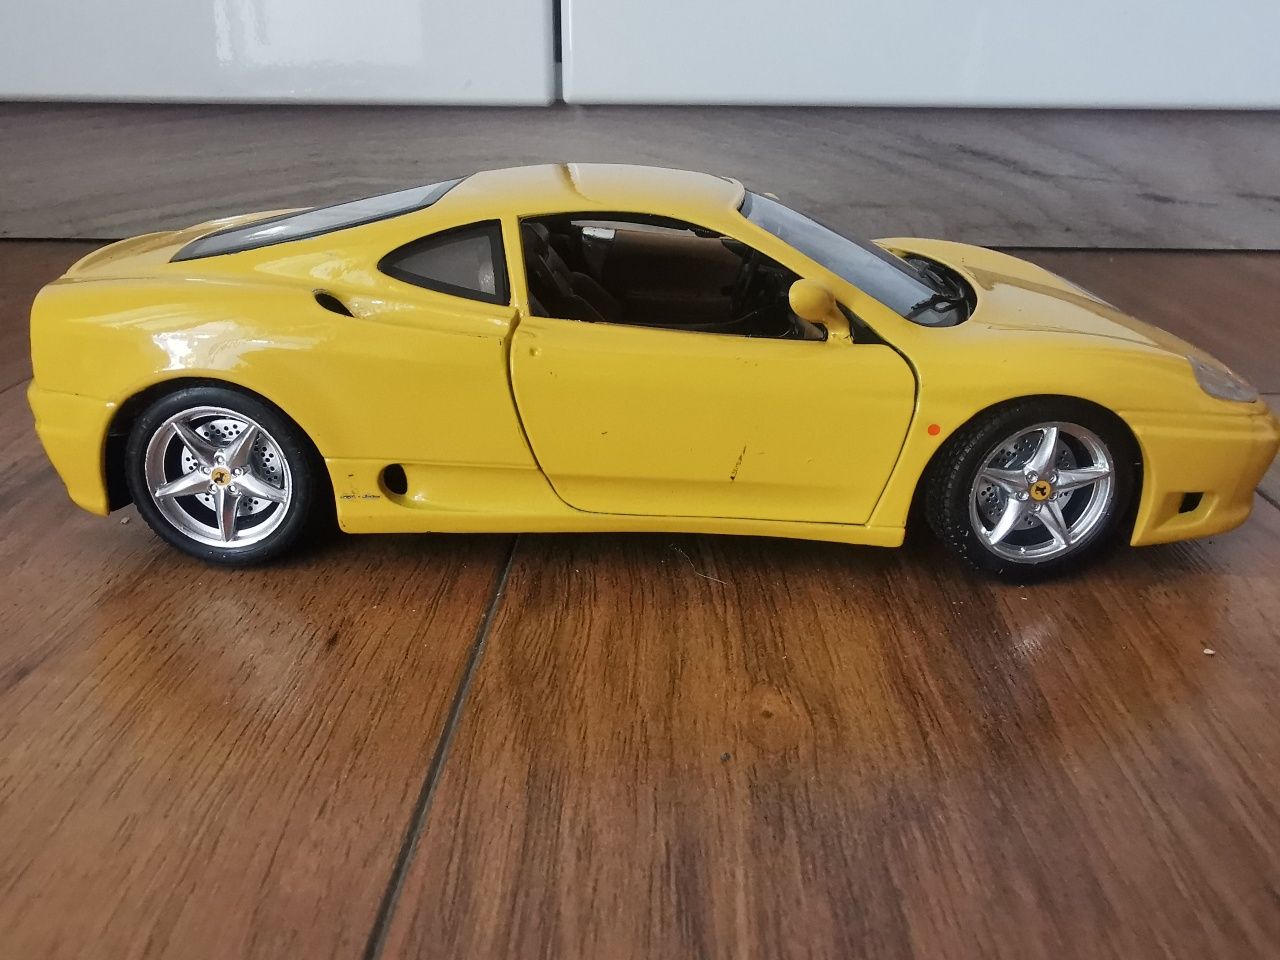 Macheta de colectie Ferrari 1:18 metal